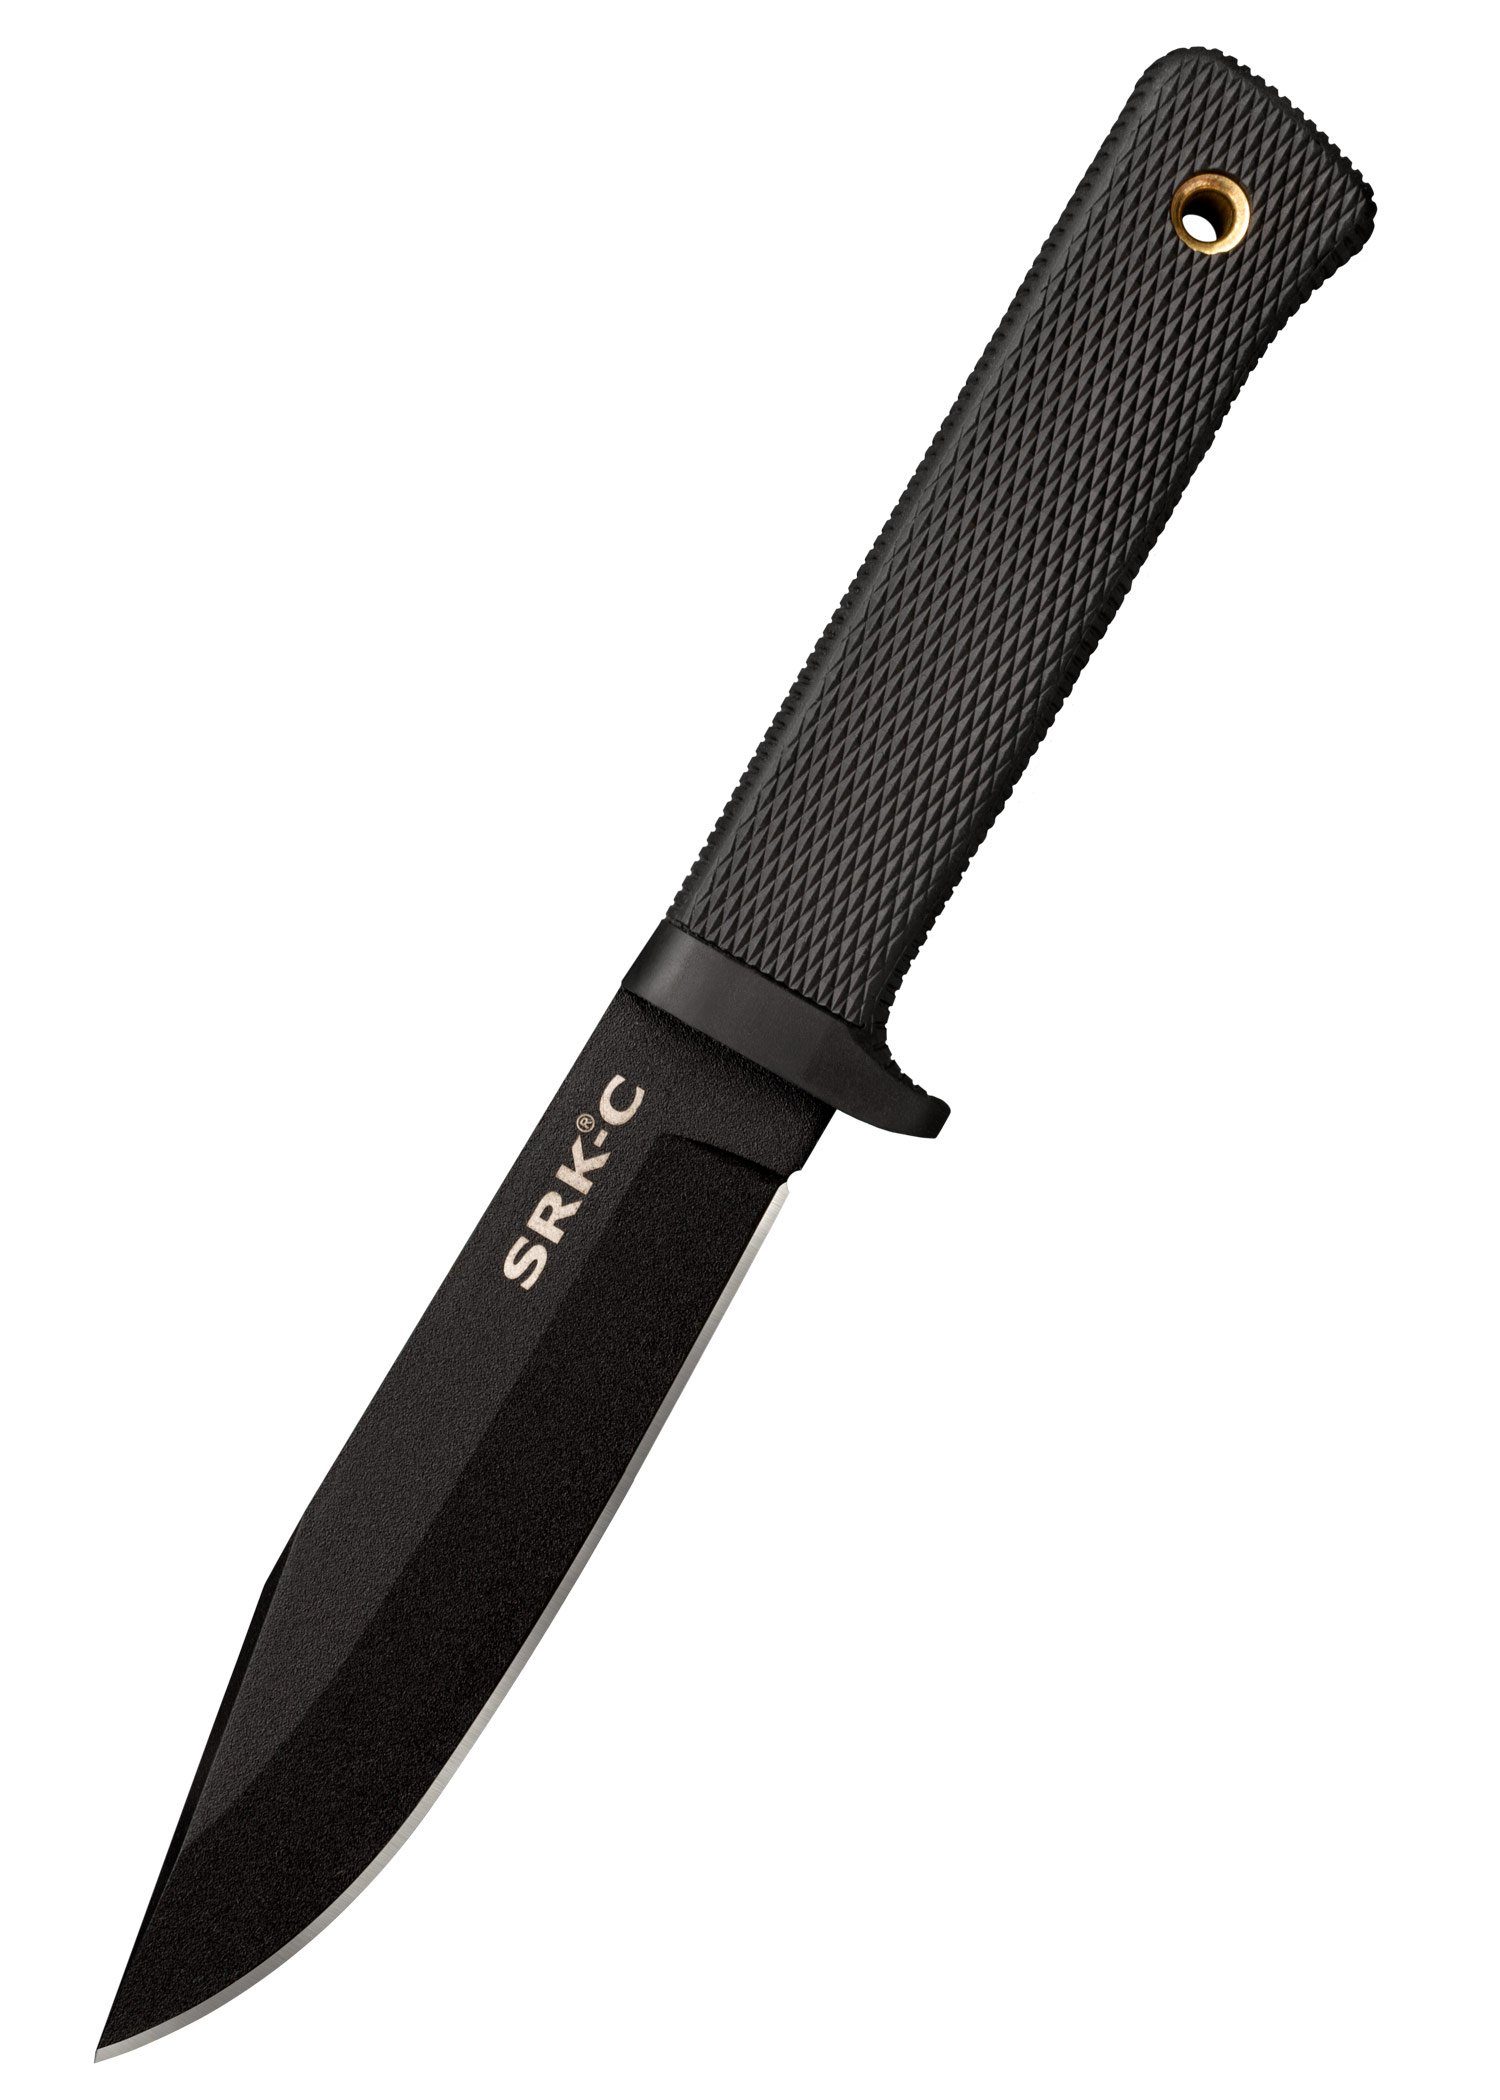 Cold Steel Survival Knife Cold Steel Rettungsmesser SRK Compact feststehendes Messer mit Scheide | Taschenmesser